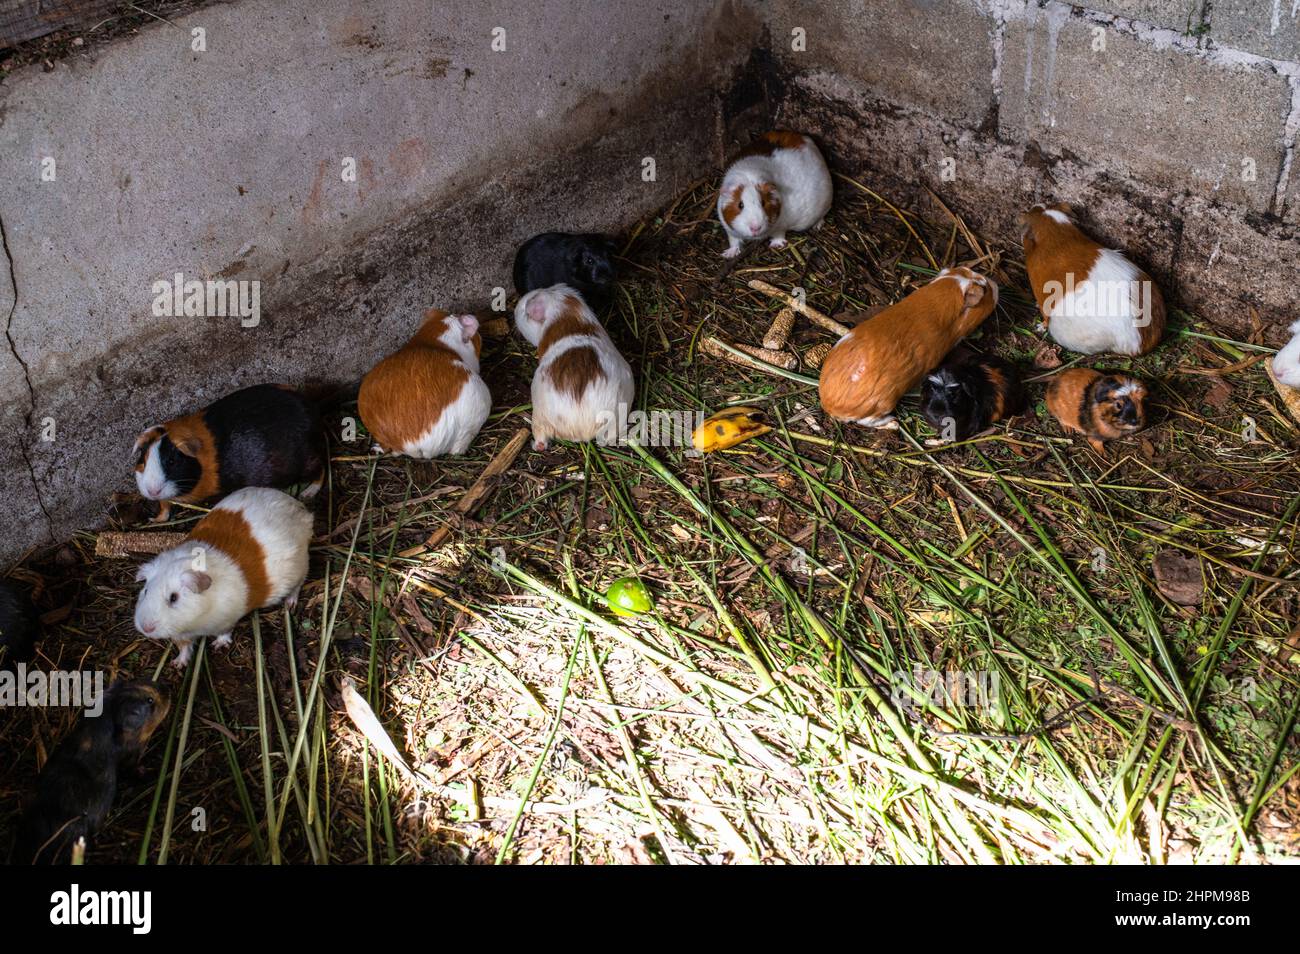 Live Peruvian guinea pigs (Cavia porcellus), domestic guinea pigs in Peruvian farm Stock Photo